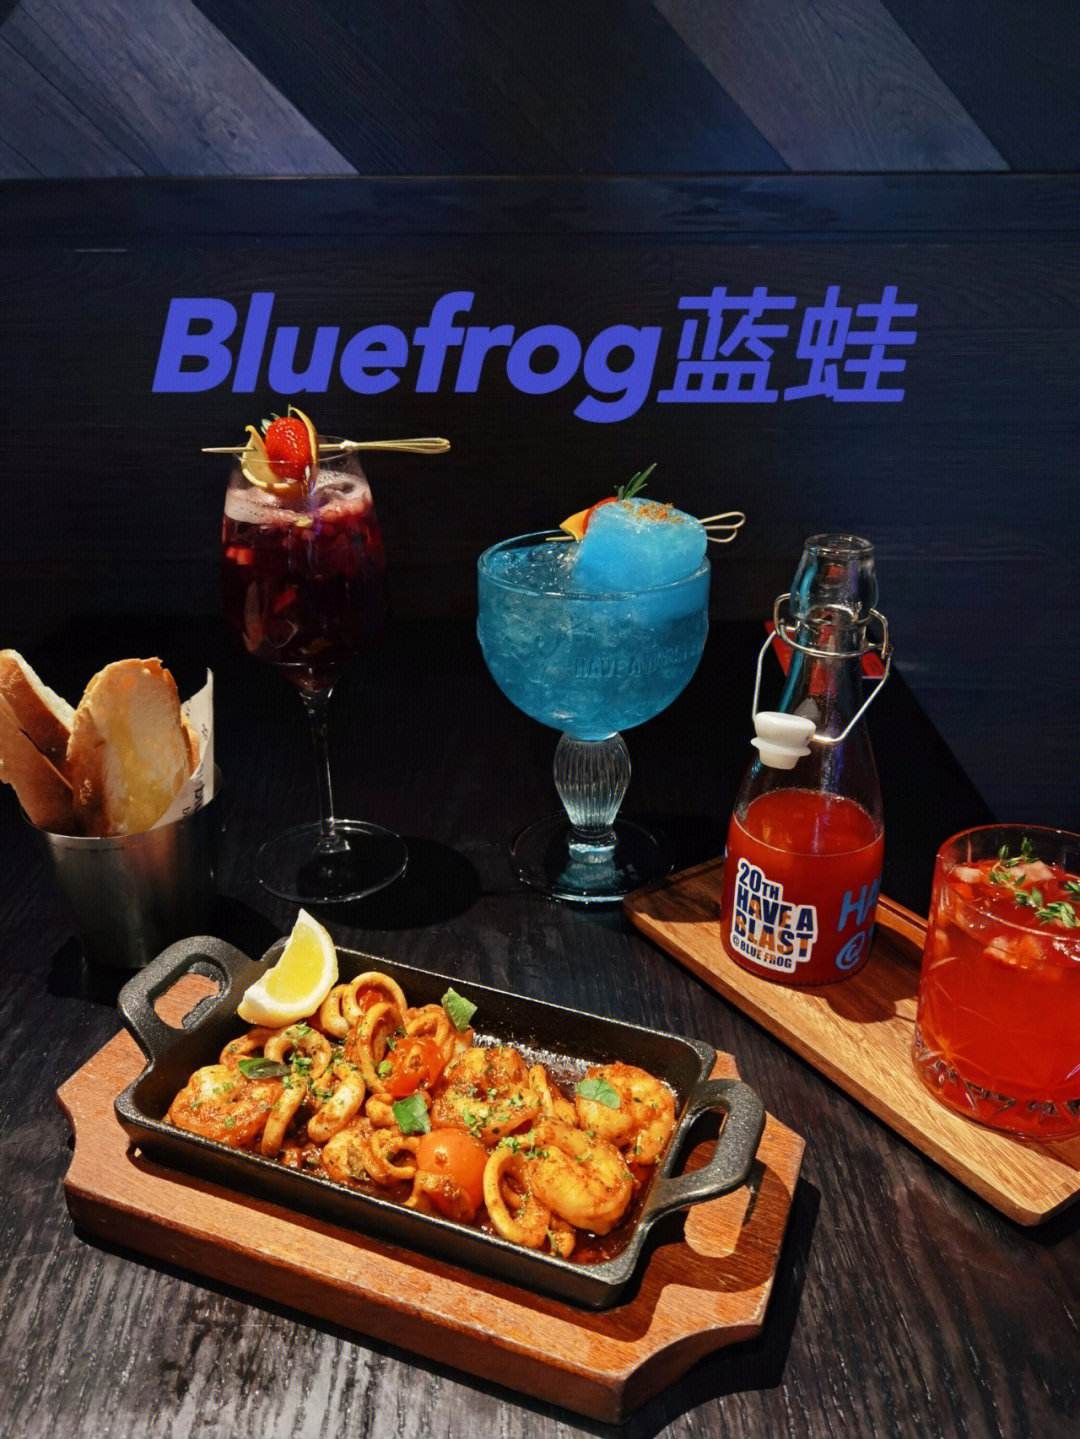 上海蓝蛙菜单价目表图片